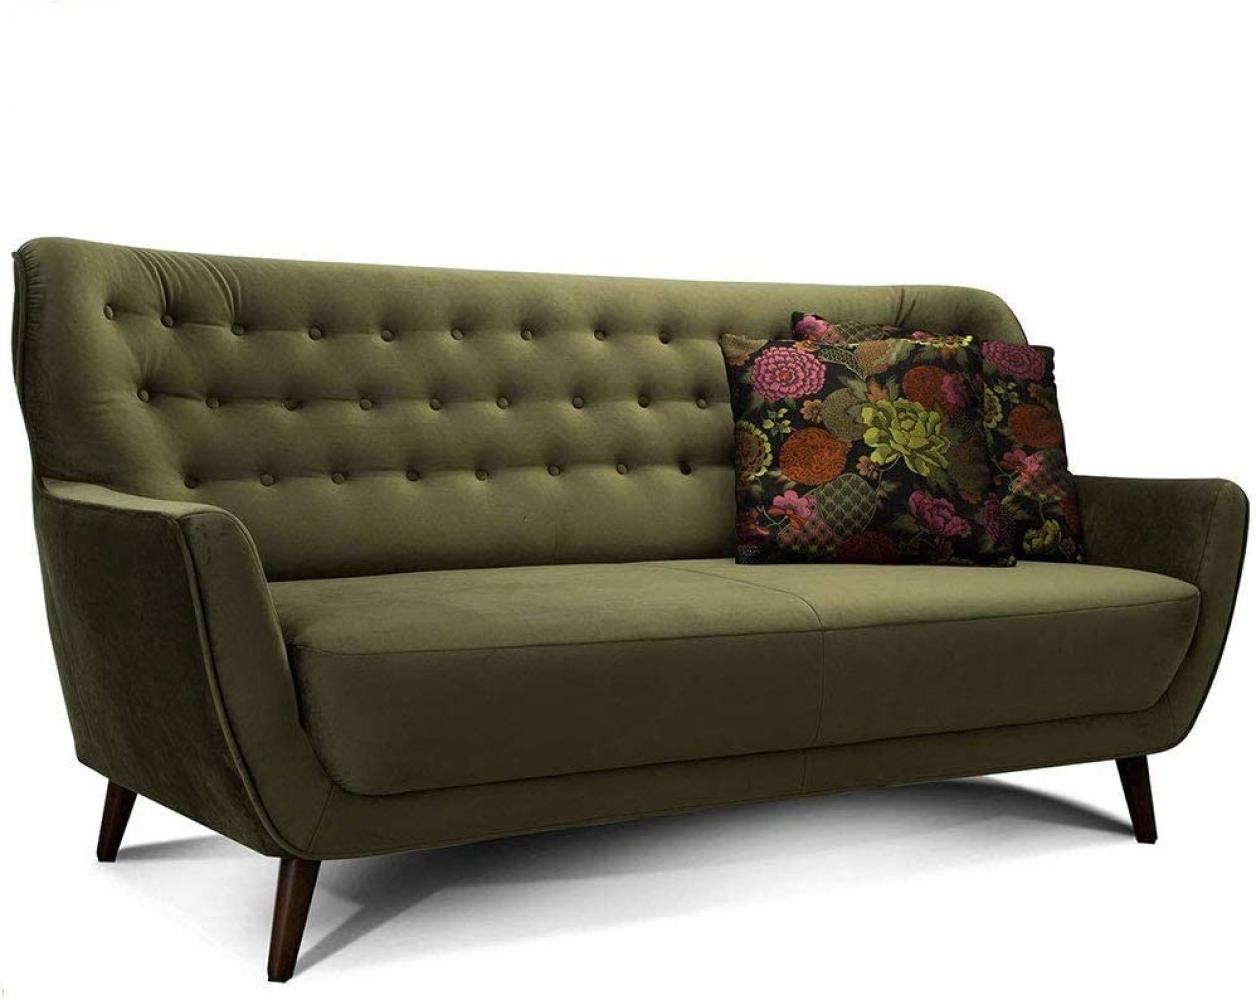 CAVADORE 3-Sitzer-Sofa Abby / Retro-Couch im Samt-Look mit Knopfheftung / 183 x 89 x 88 / Samtoptik, grün Bild 1